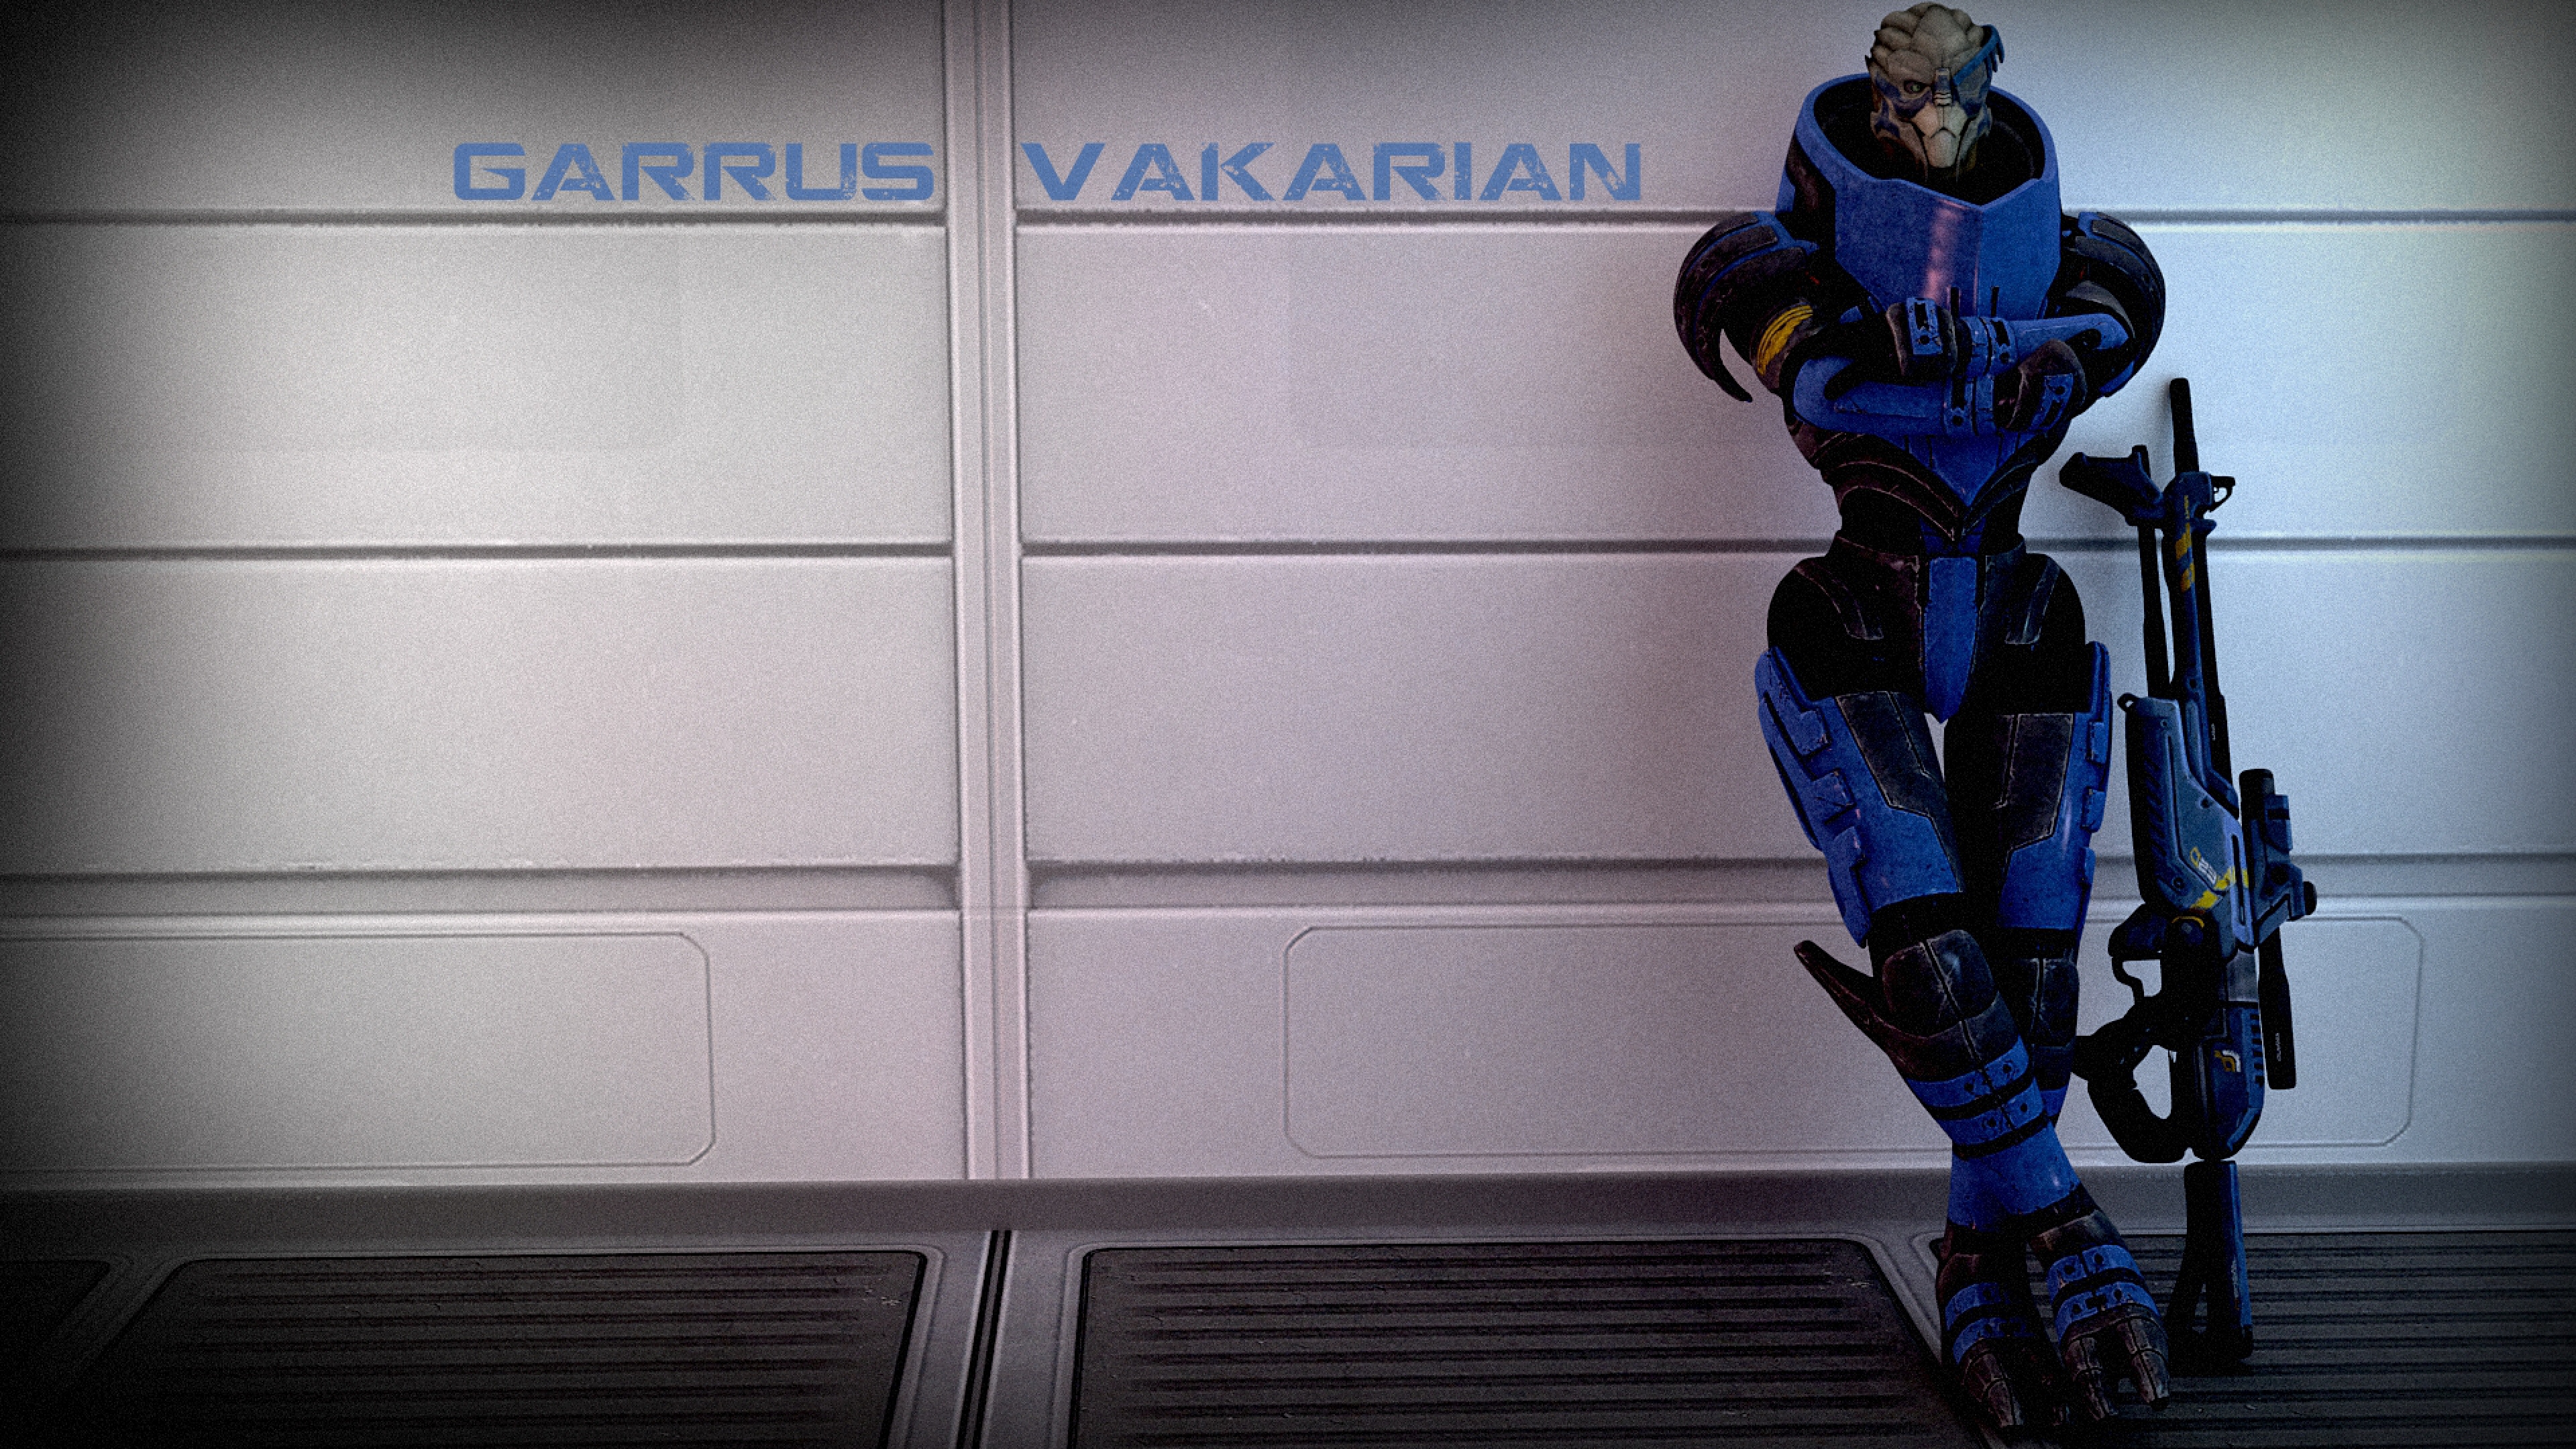 Garrus Vakarian Wall Gun Name Relax Wallpaper Background 4k Ultra